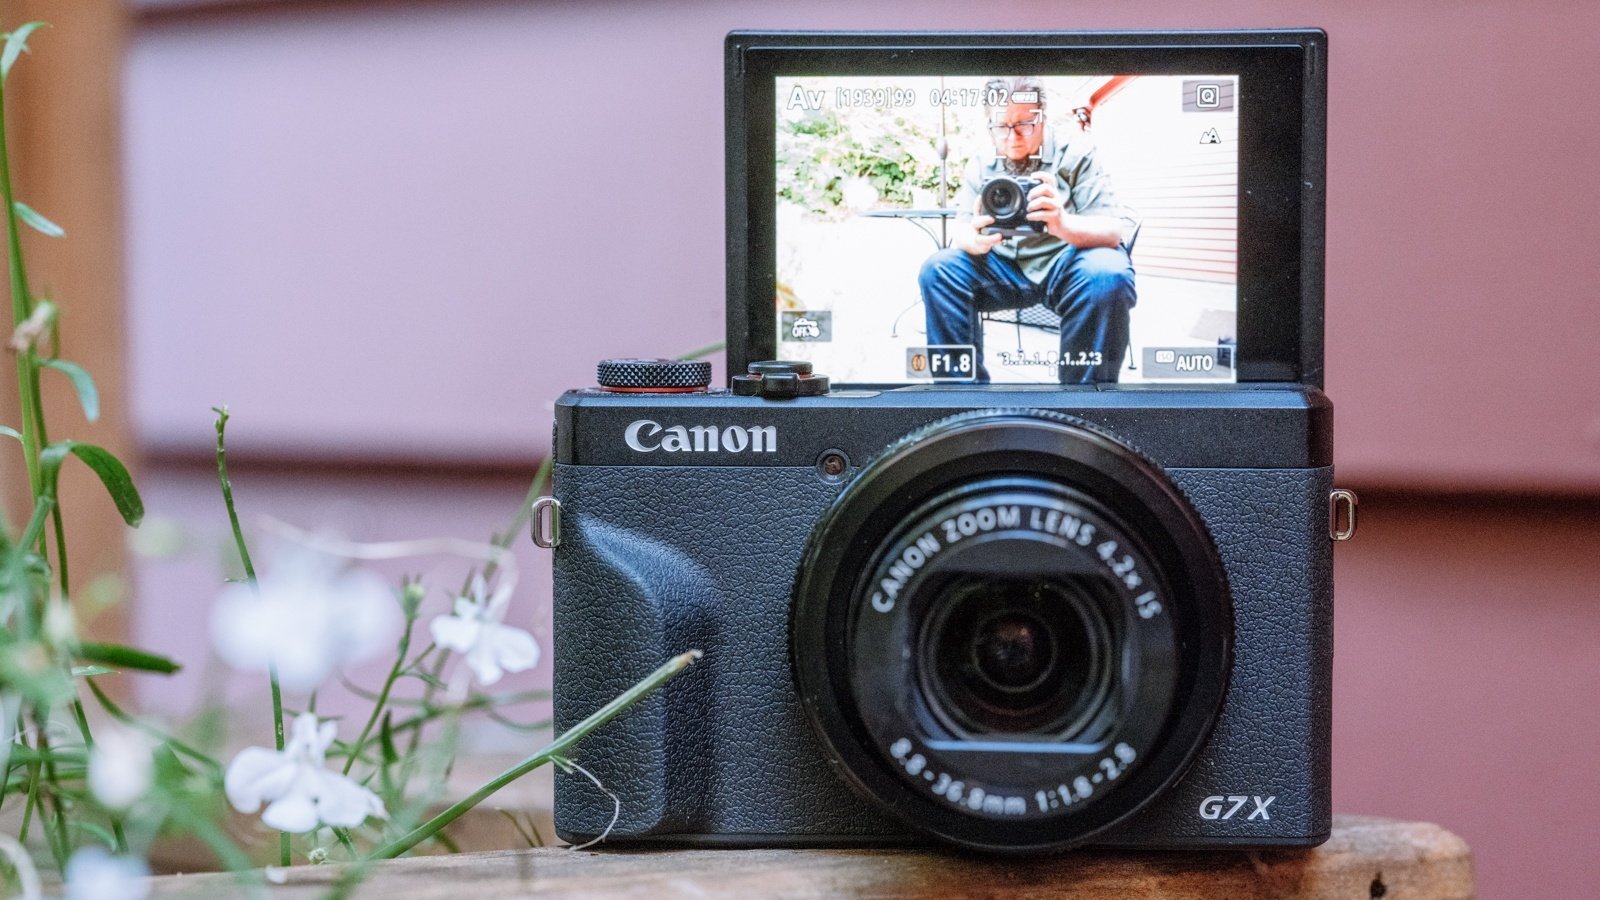 Canon PowerShot G7 X Mark III: סקירה כללית של מצלמה קומפקטית